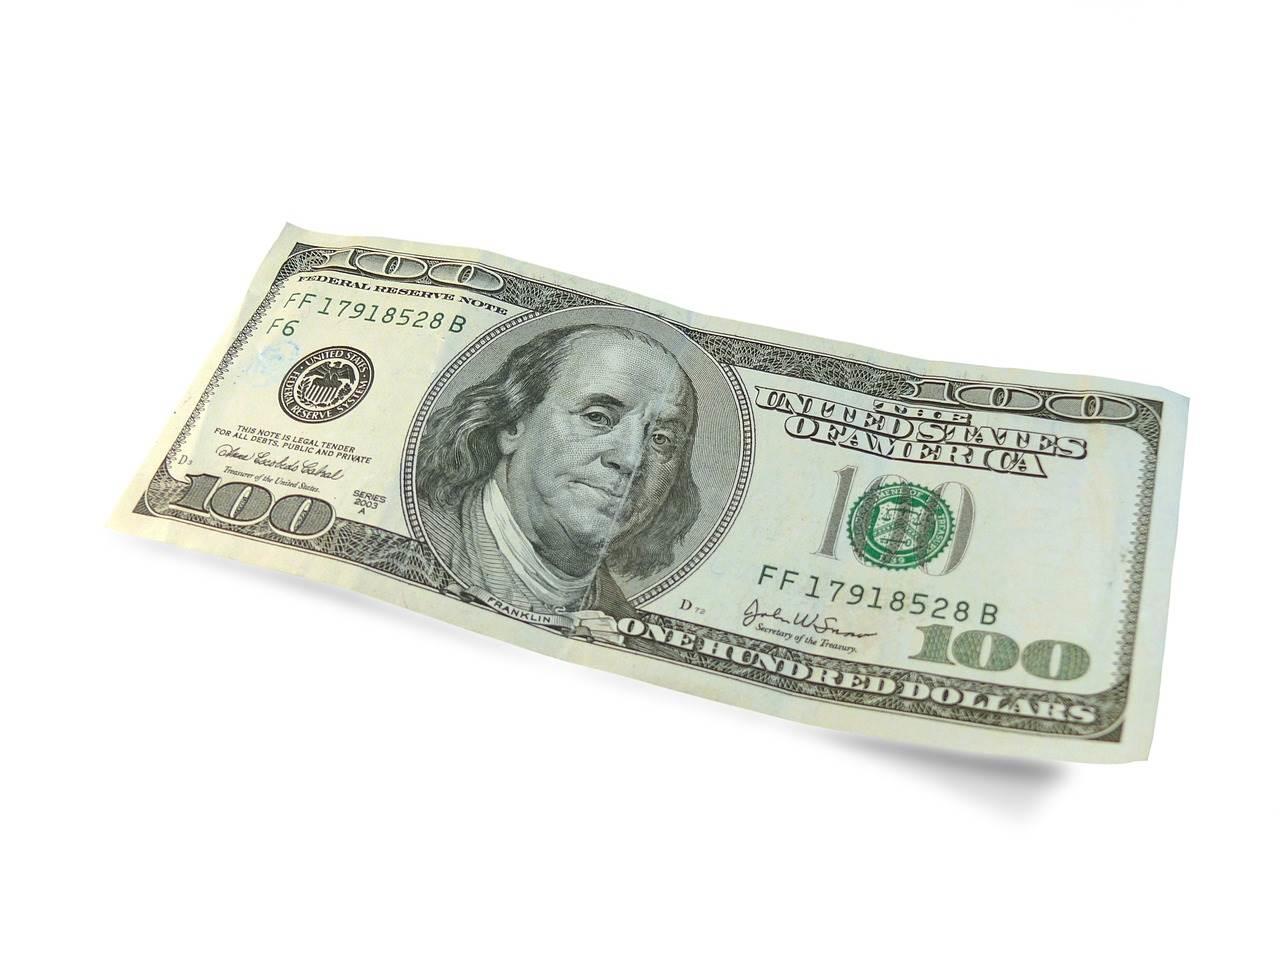 Precio del dólar hoy en México. Foto: Pixabay